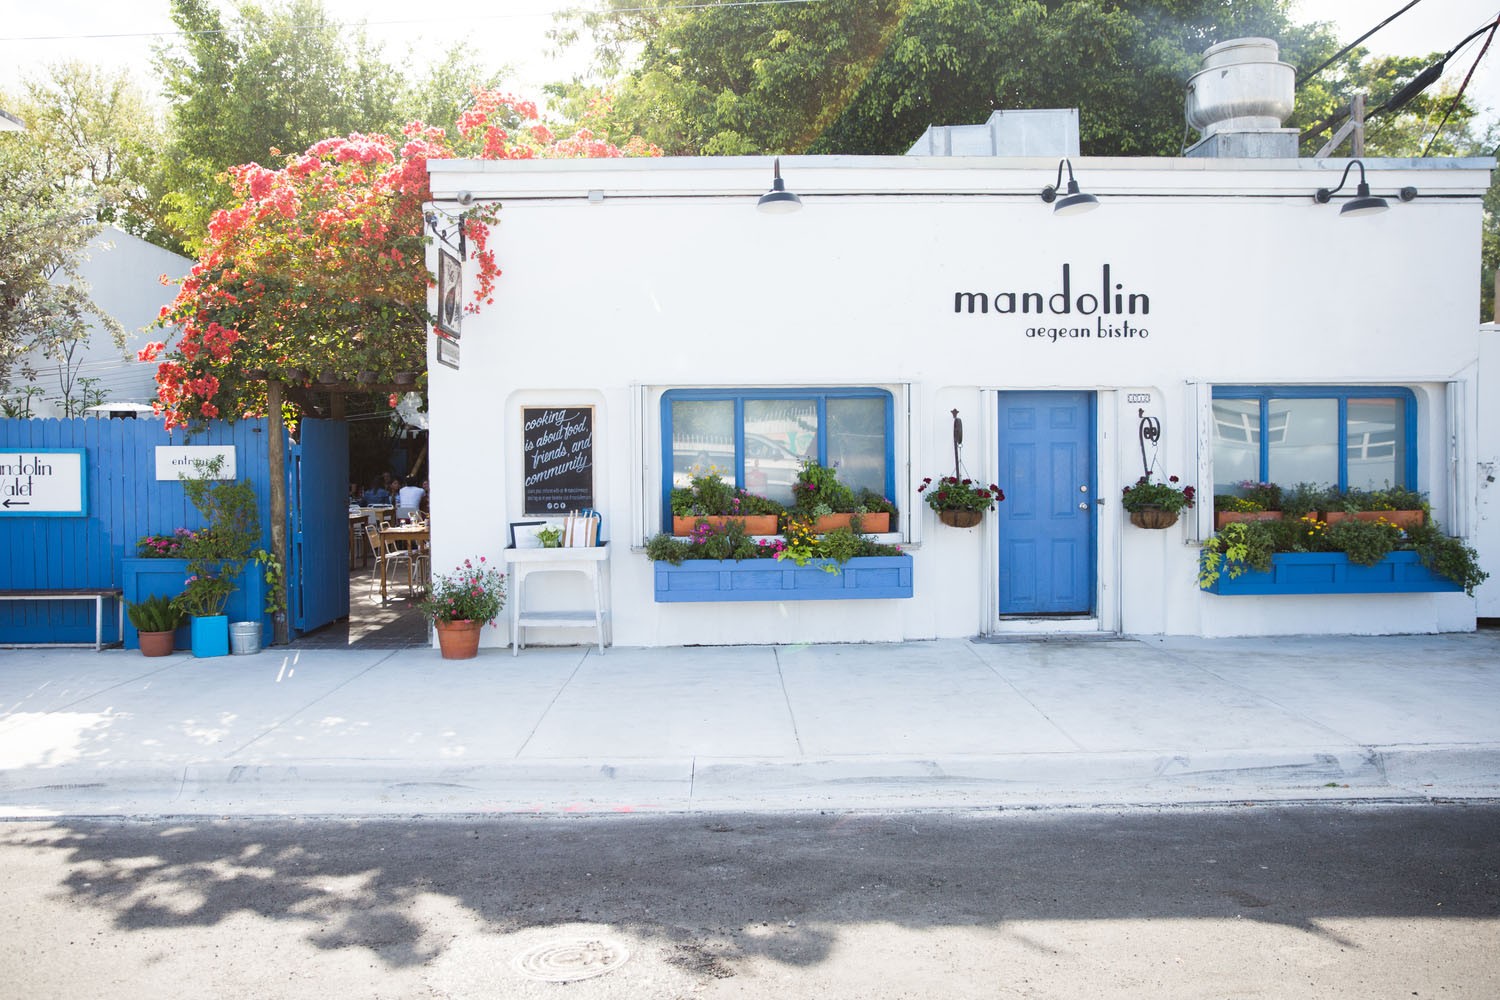 15 restaurantes em Miami que valem a visita (Foto: Divulgação)